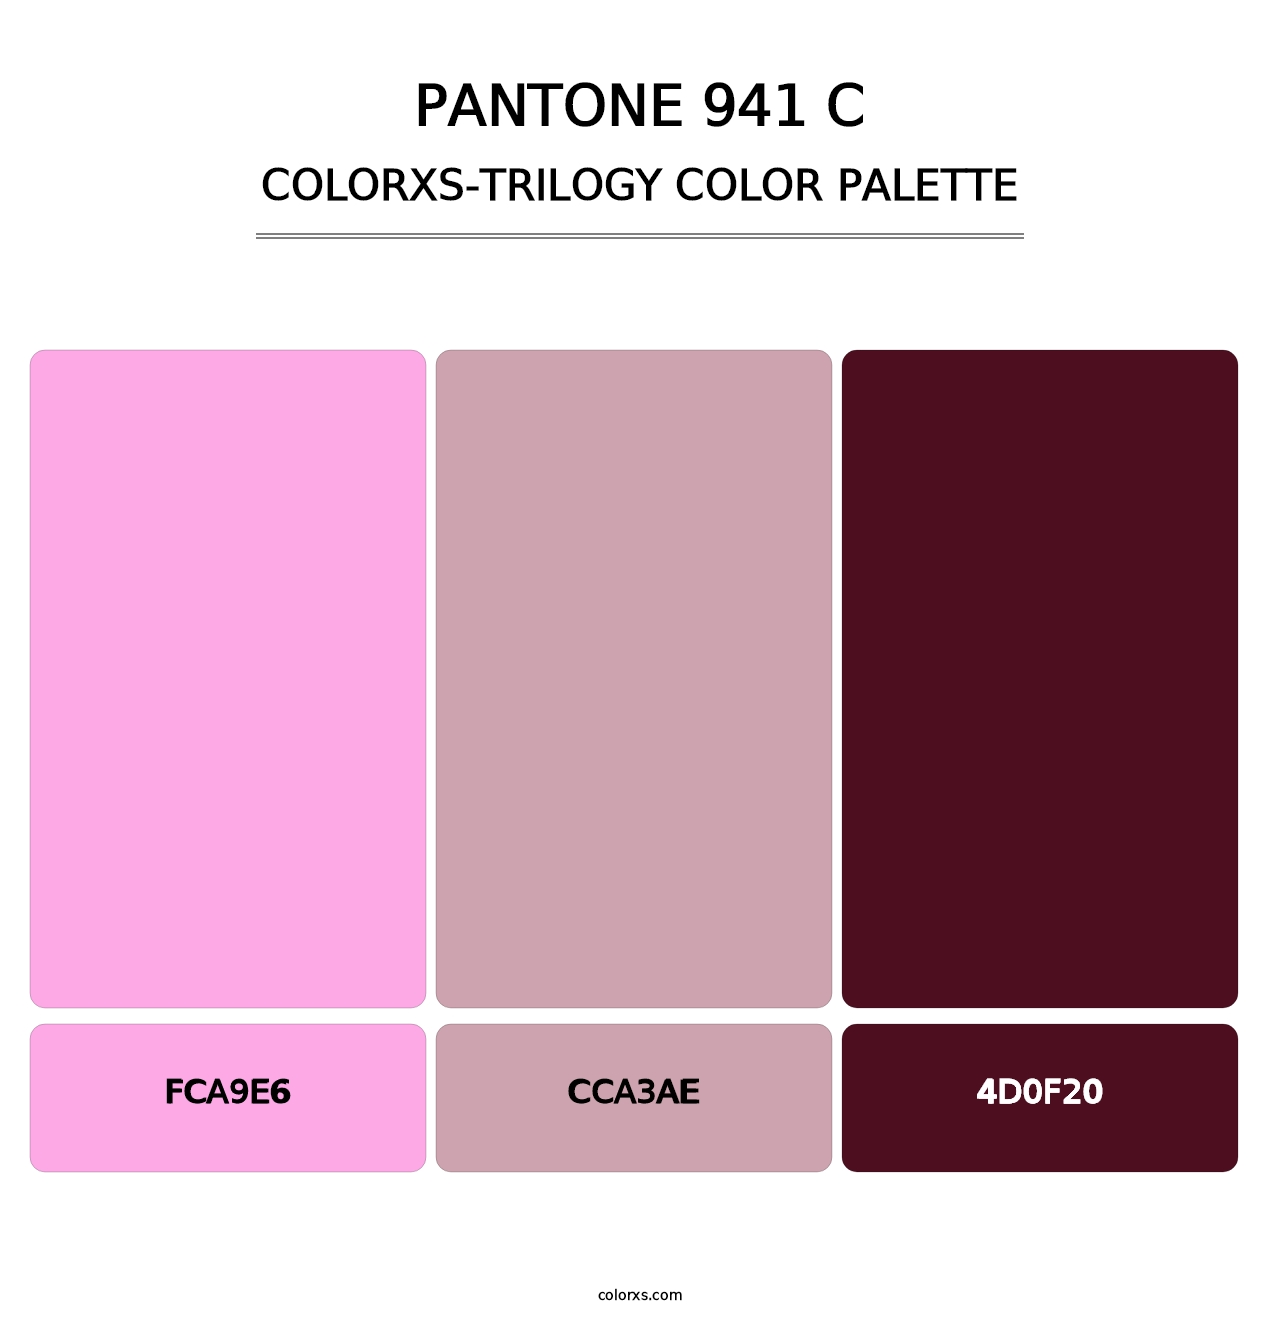 PANTONE 941 C - Colorxs Trilogy Palette